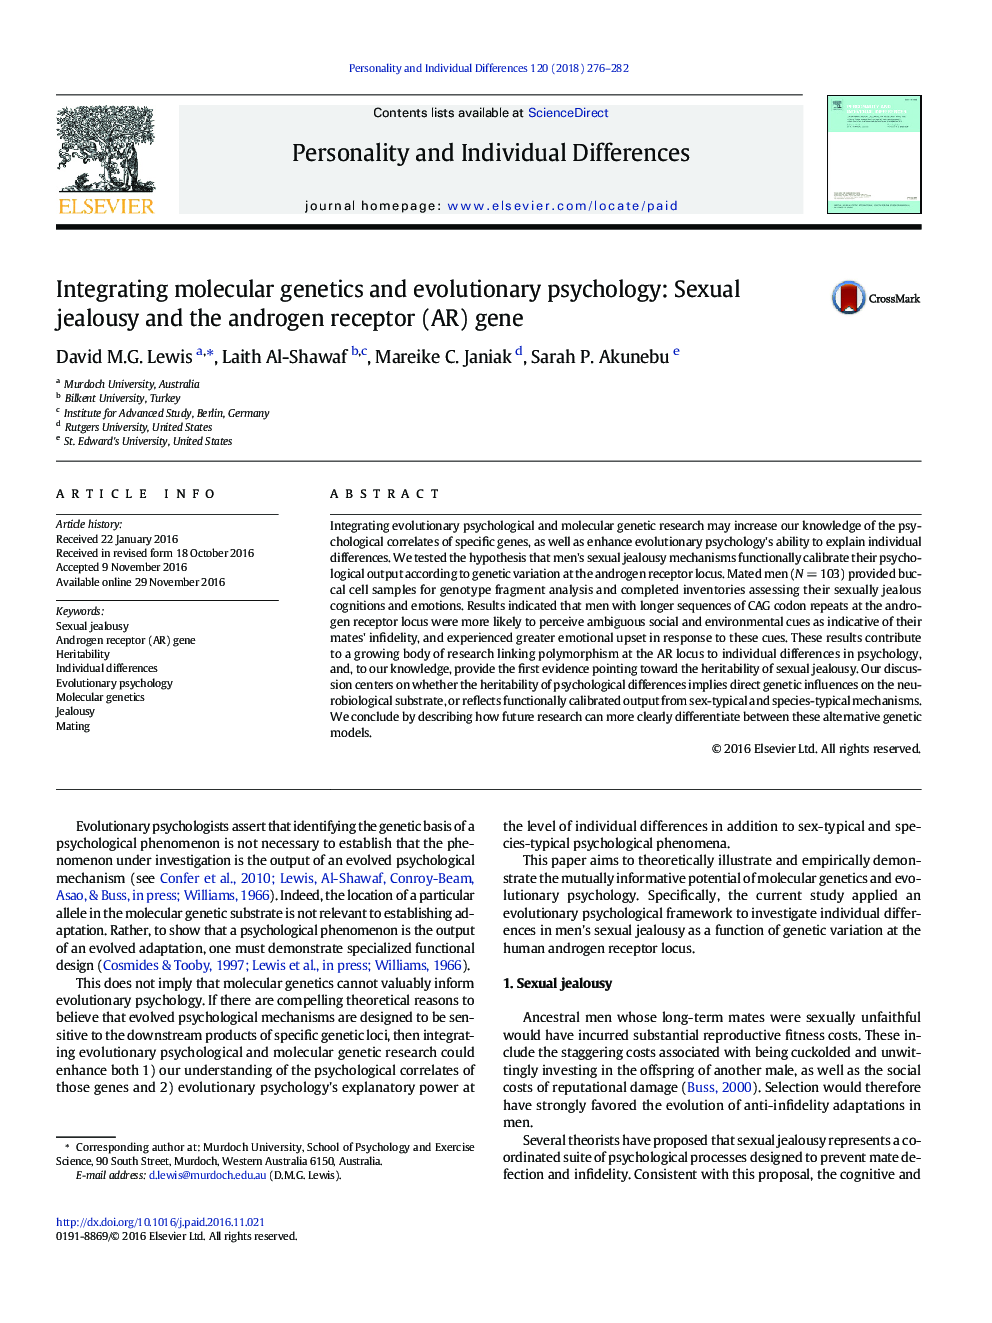 ادغام ژنتیک مولکولی و روانشناسی تکاملی: حسادت جنسی و ژن گیرنده آندروژن (AR)